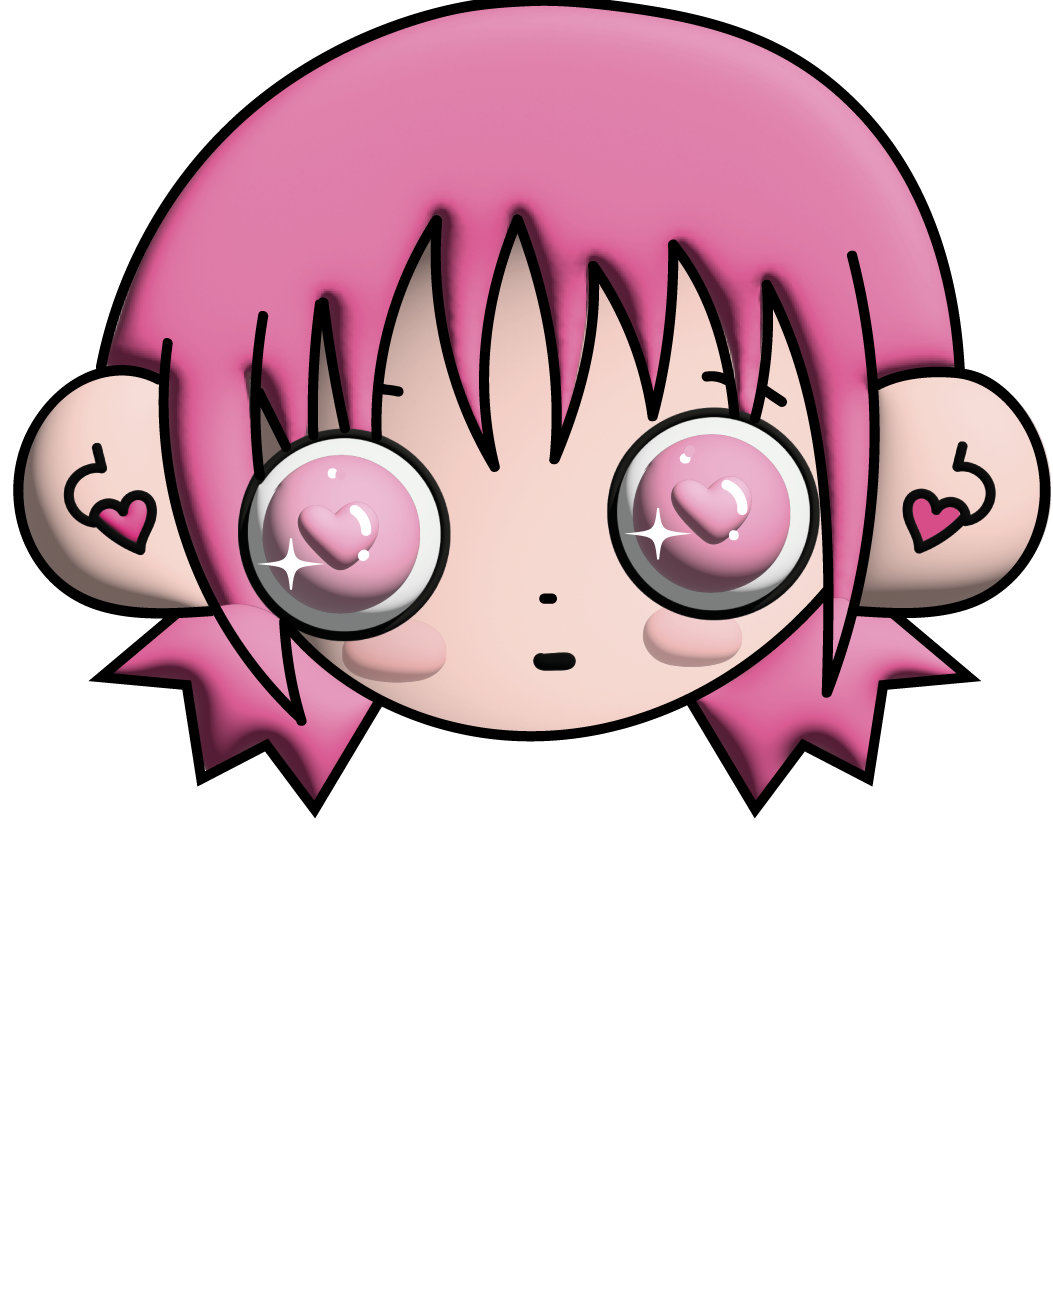 Carla Espinoza